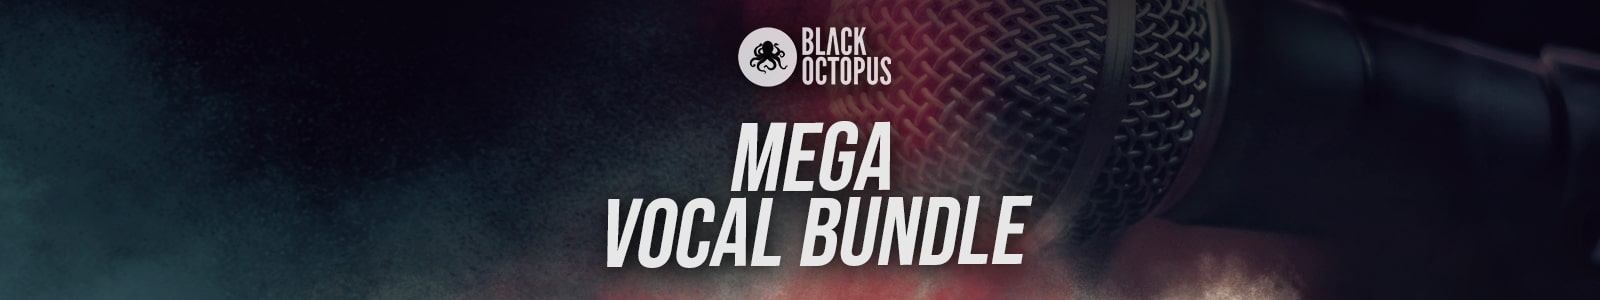 Black Octopus Mega Vocal Bundle